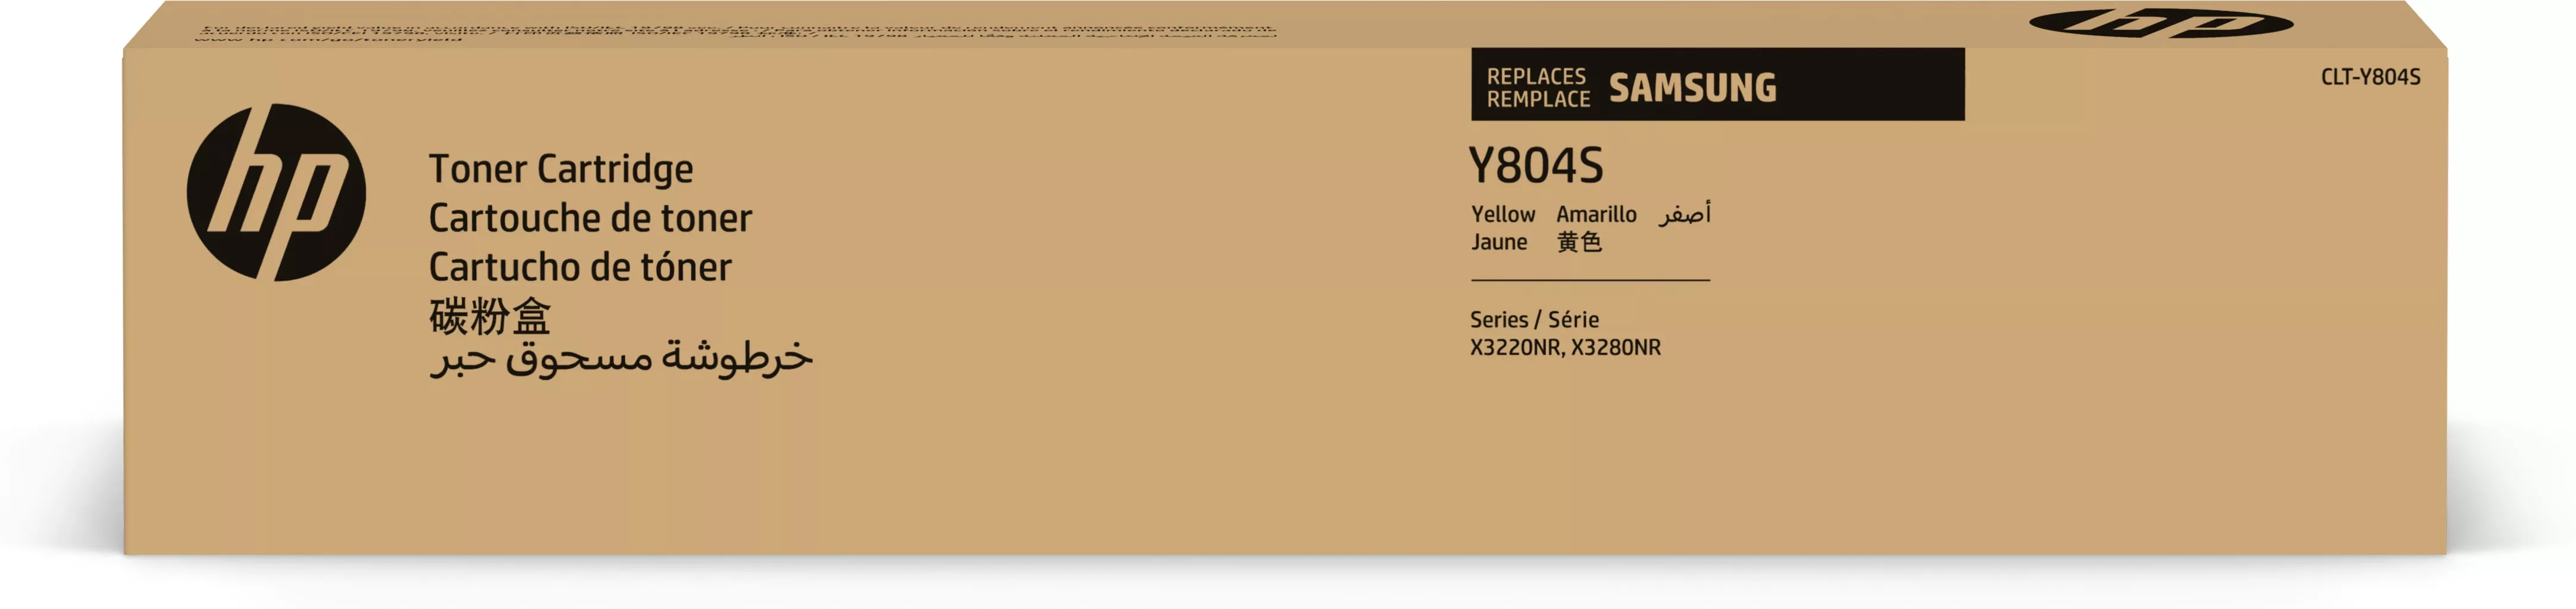 Achat SAMSUNG CLT-Y804S/ELS Yellow Toner Cartridge HP au meilleur prix